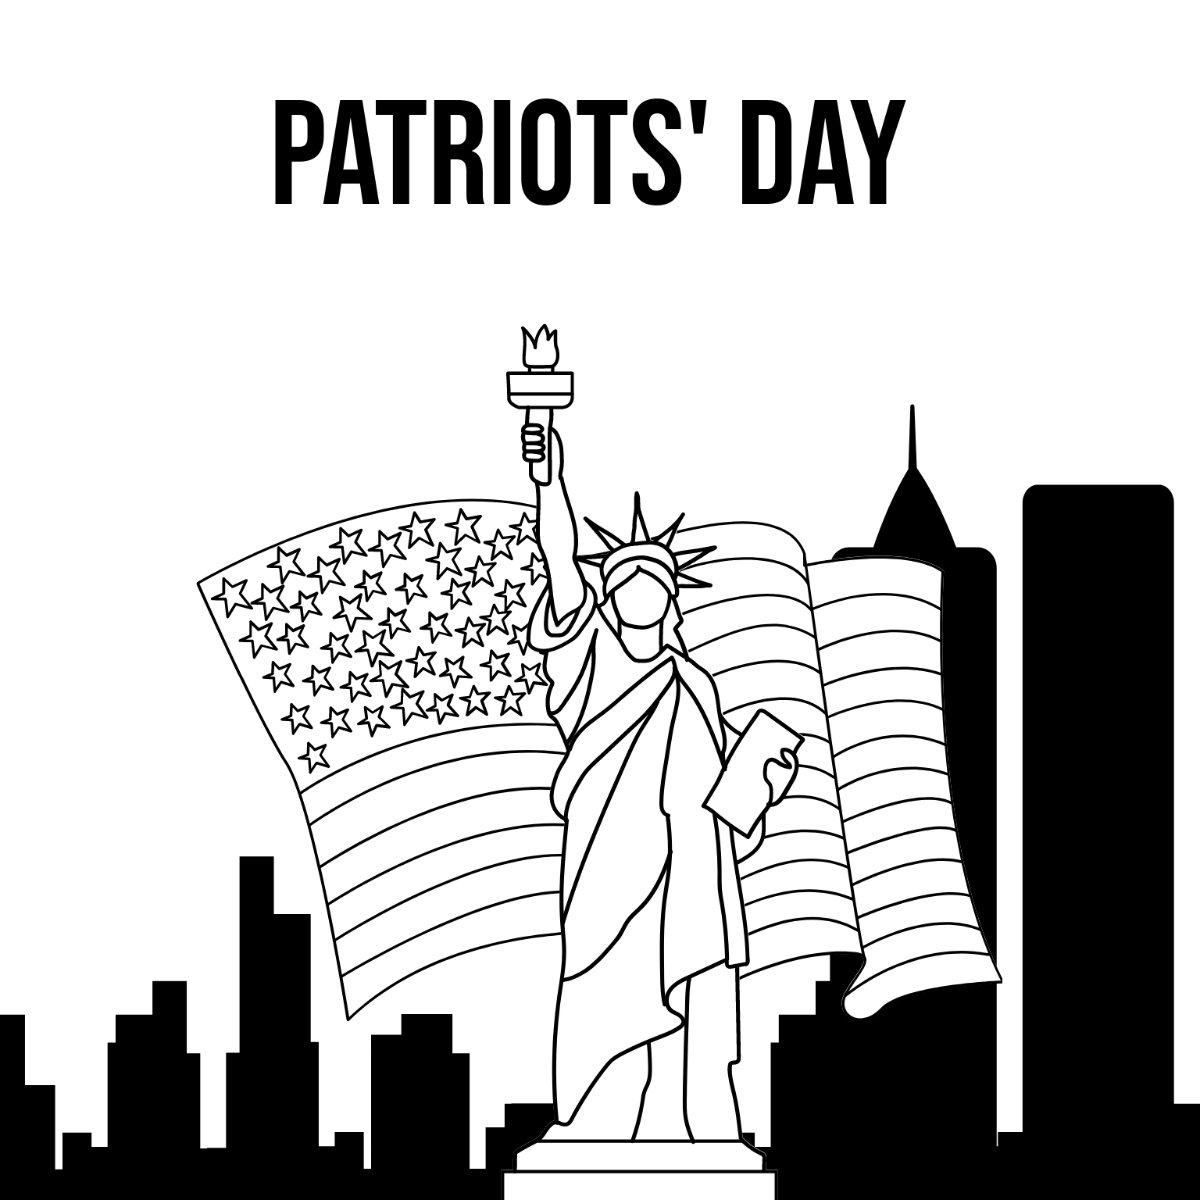 Patriots' Day Sketch Vector Template